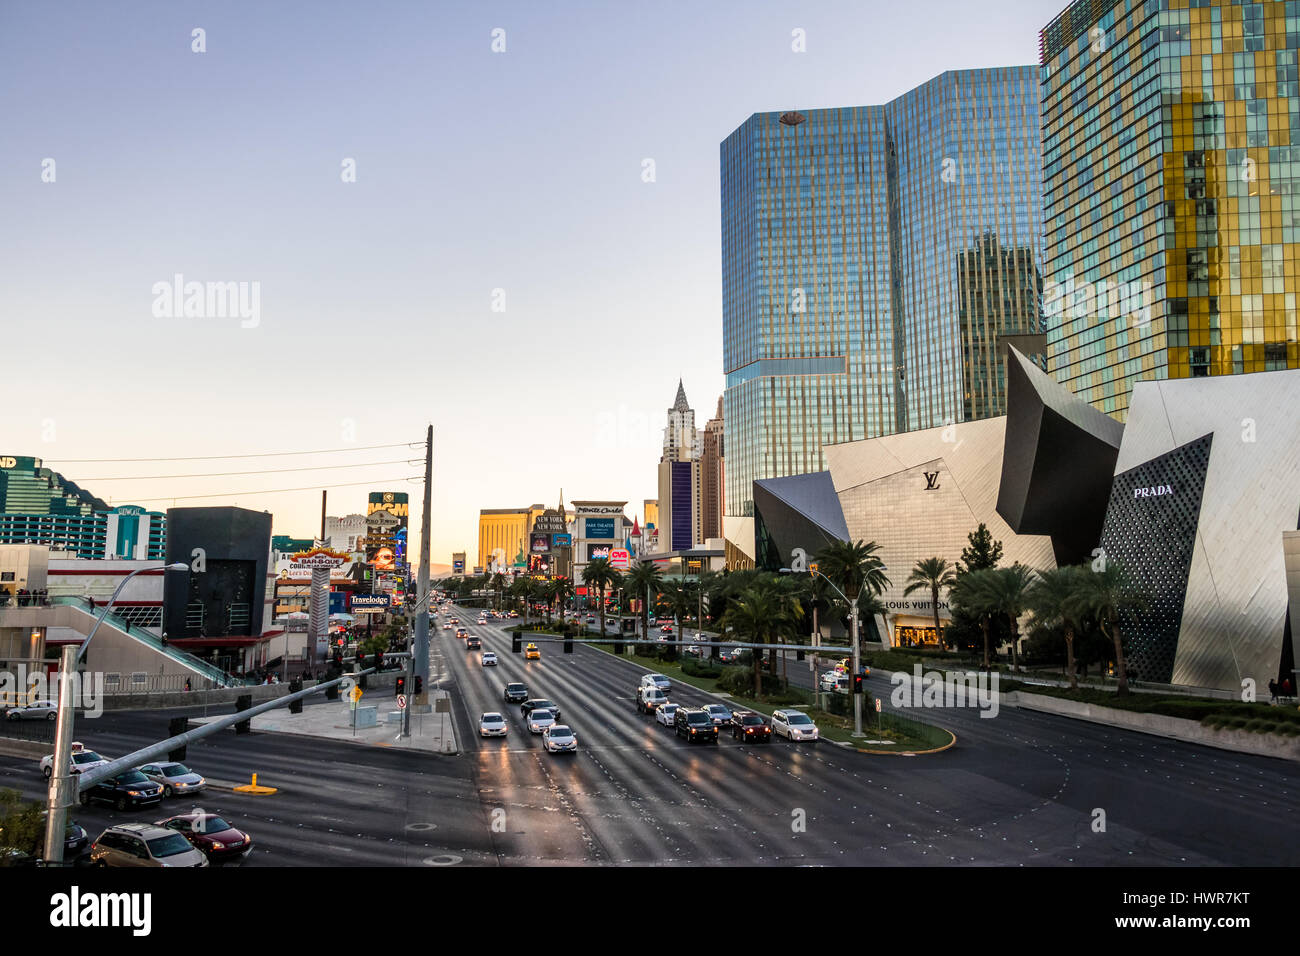 Las Vegas Strip at sunset - Las Vegas, Nevada, USA Stock Photo